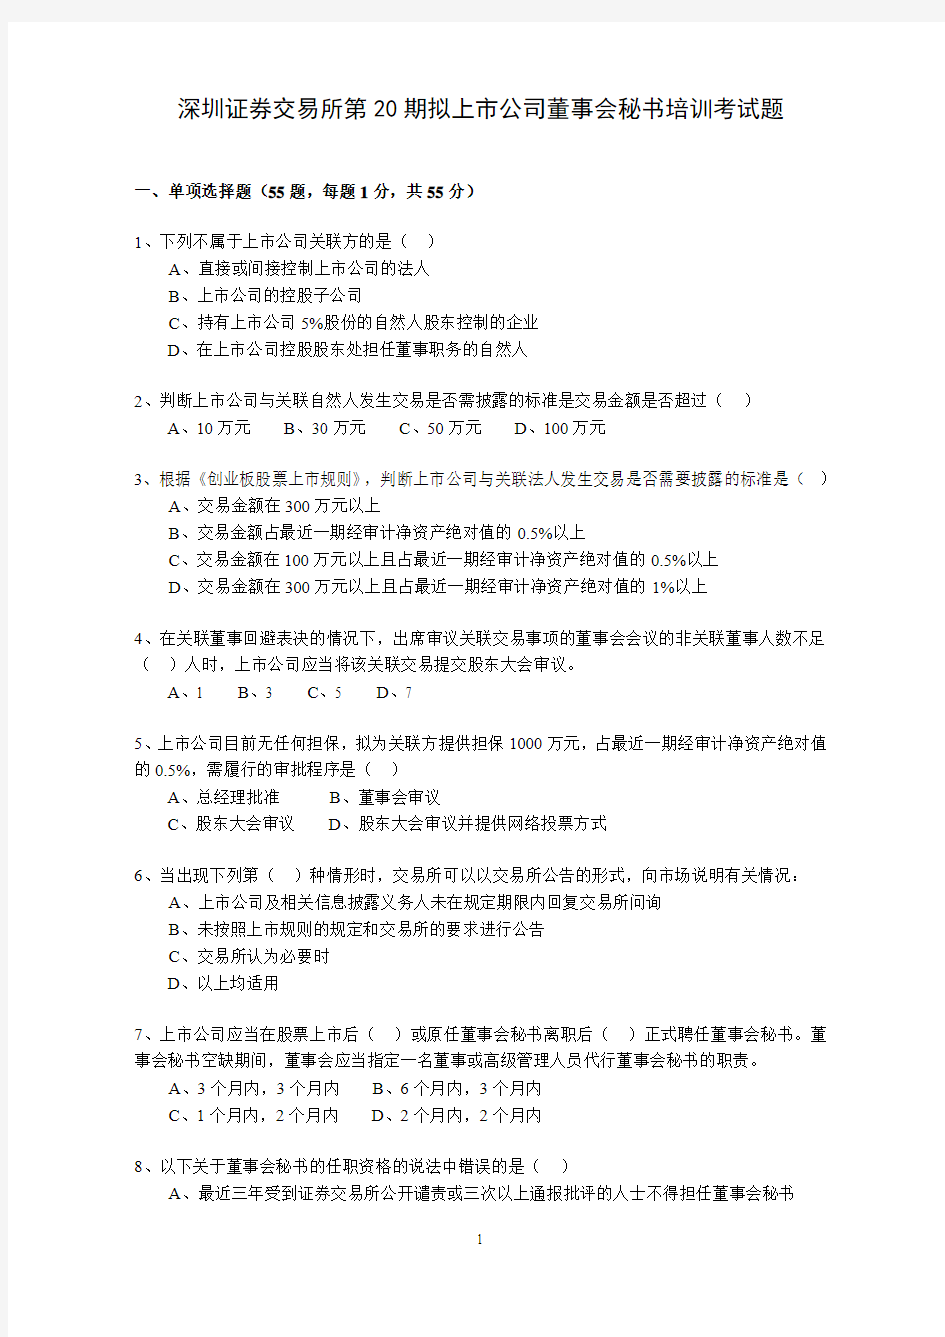 深交所第20期拟董试题(2011.11)